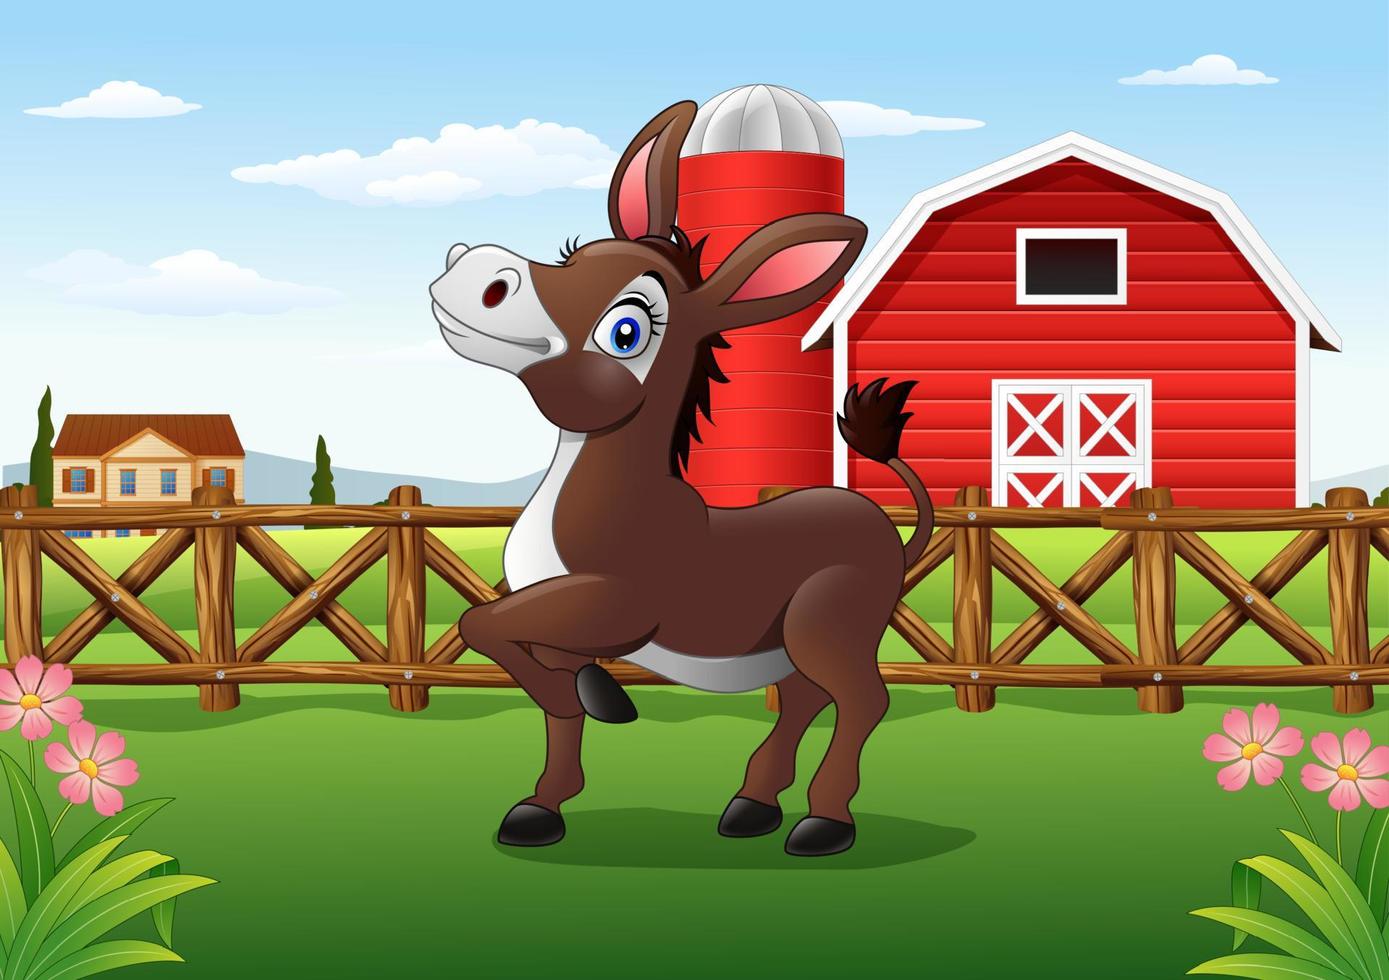 Cartoon happy donkey with farm background vector